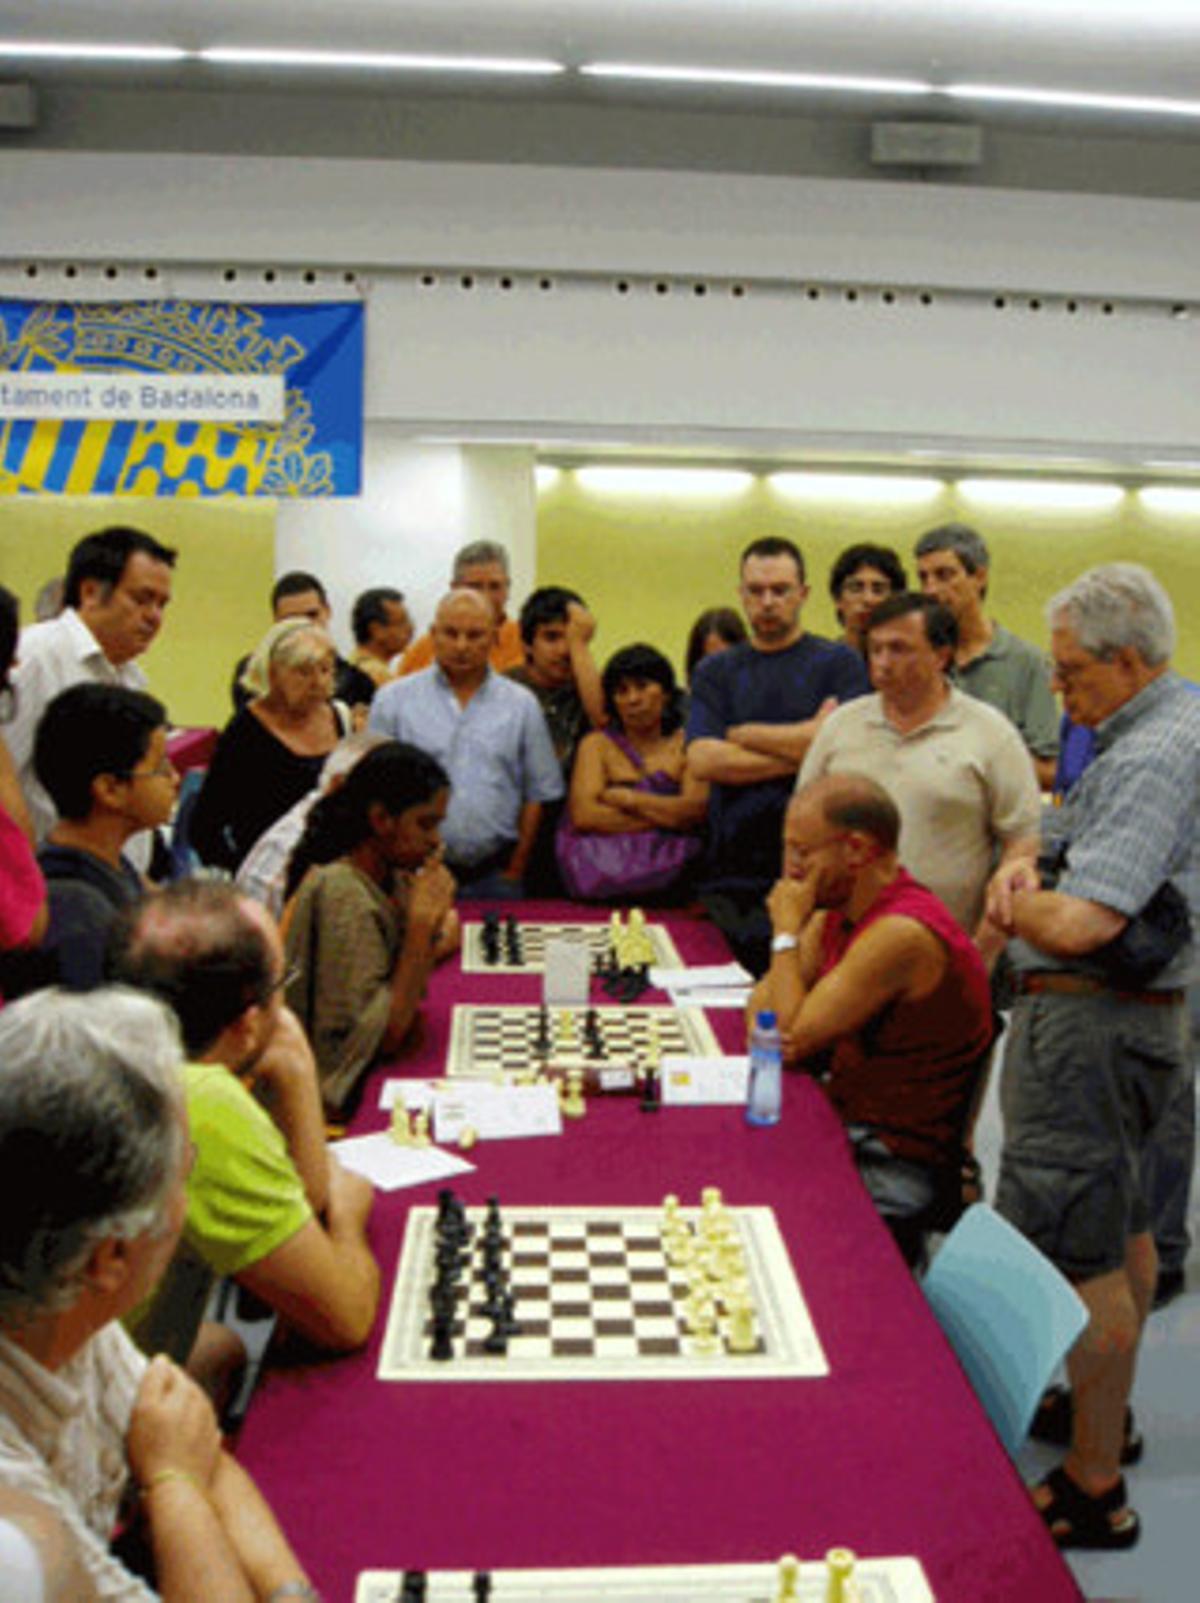 Un moment del torneig d’escacs Ciutat de Badalona.